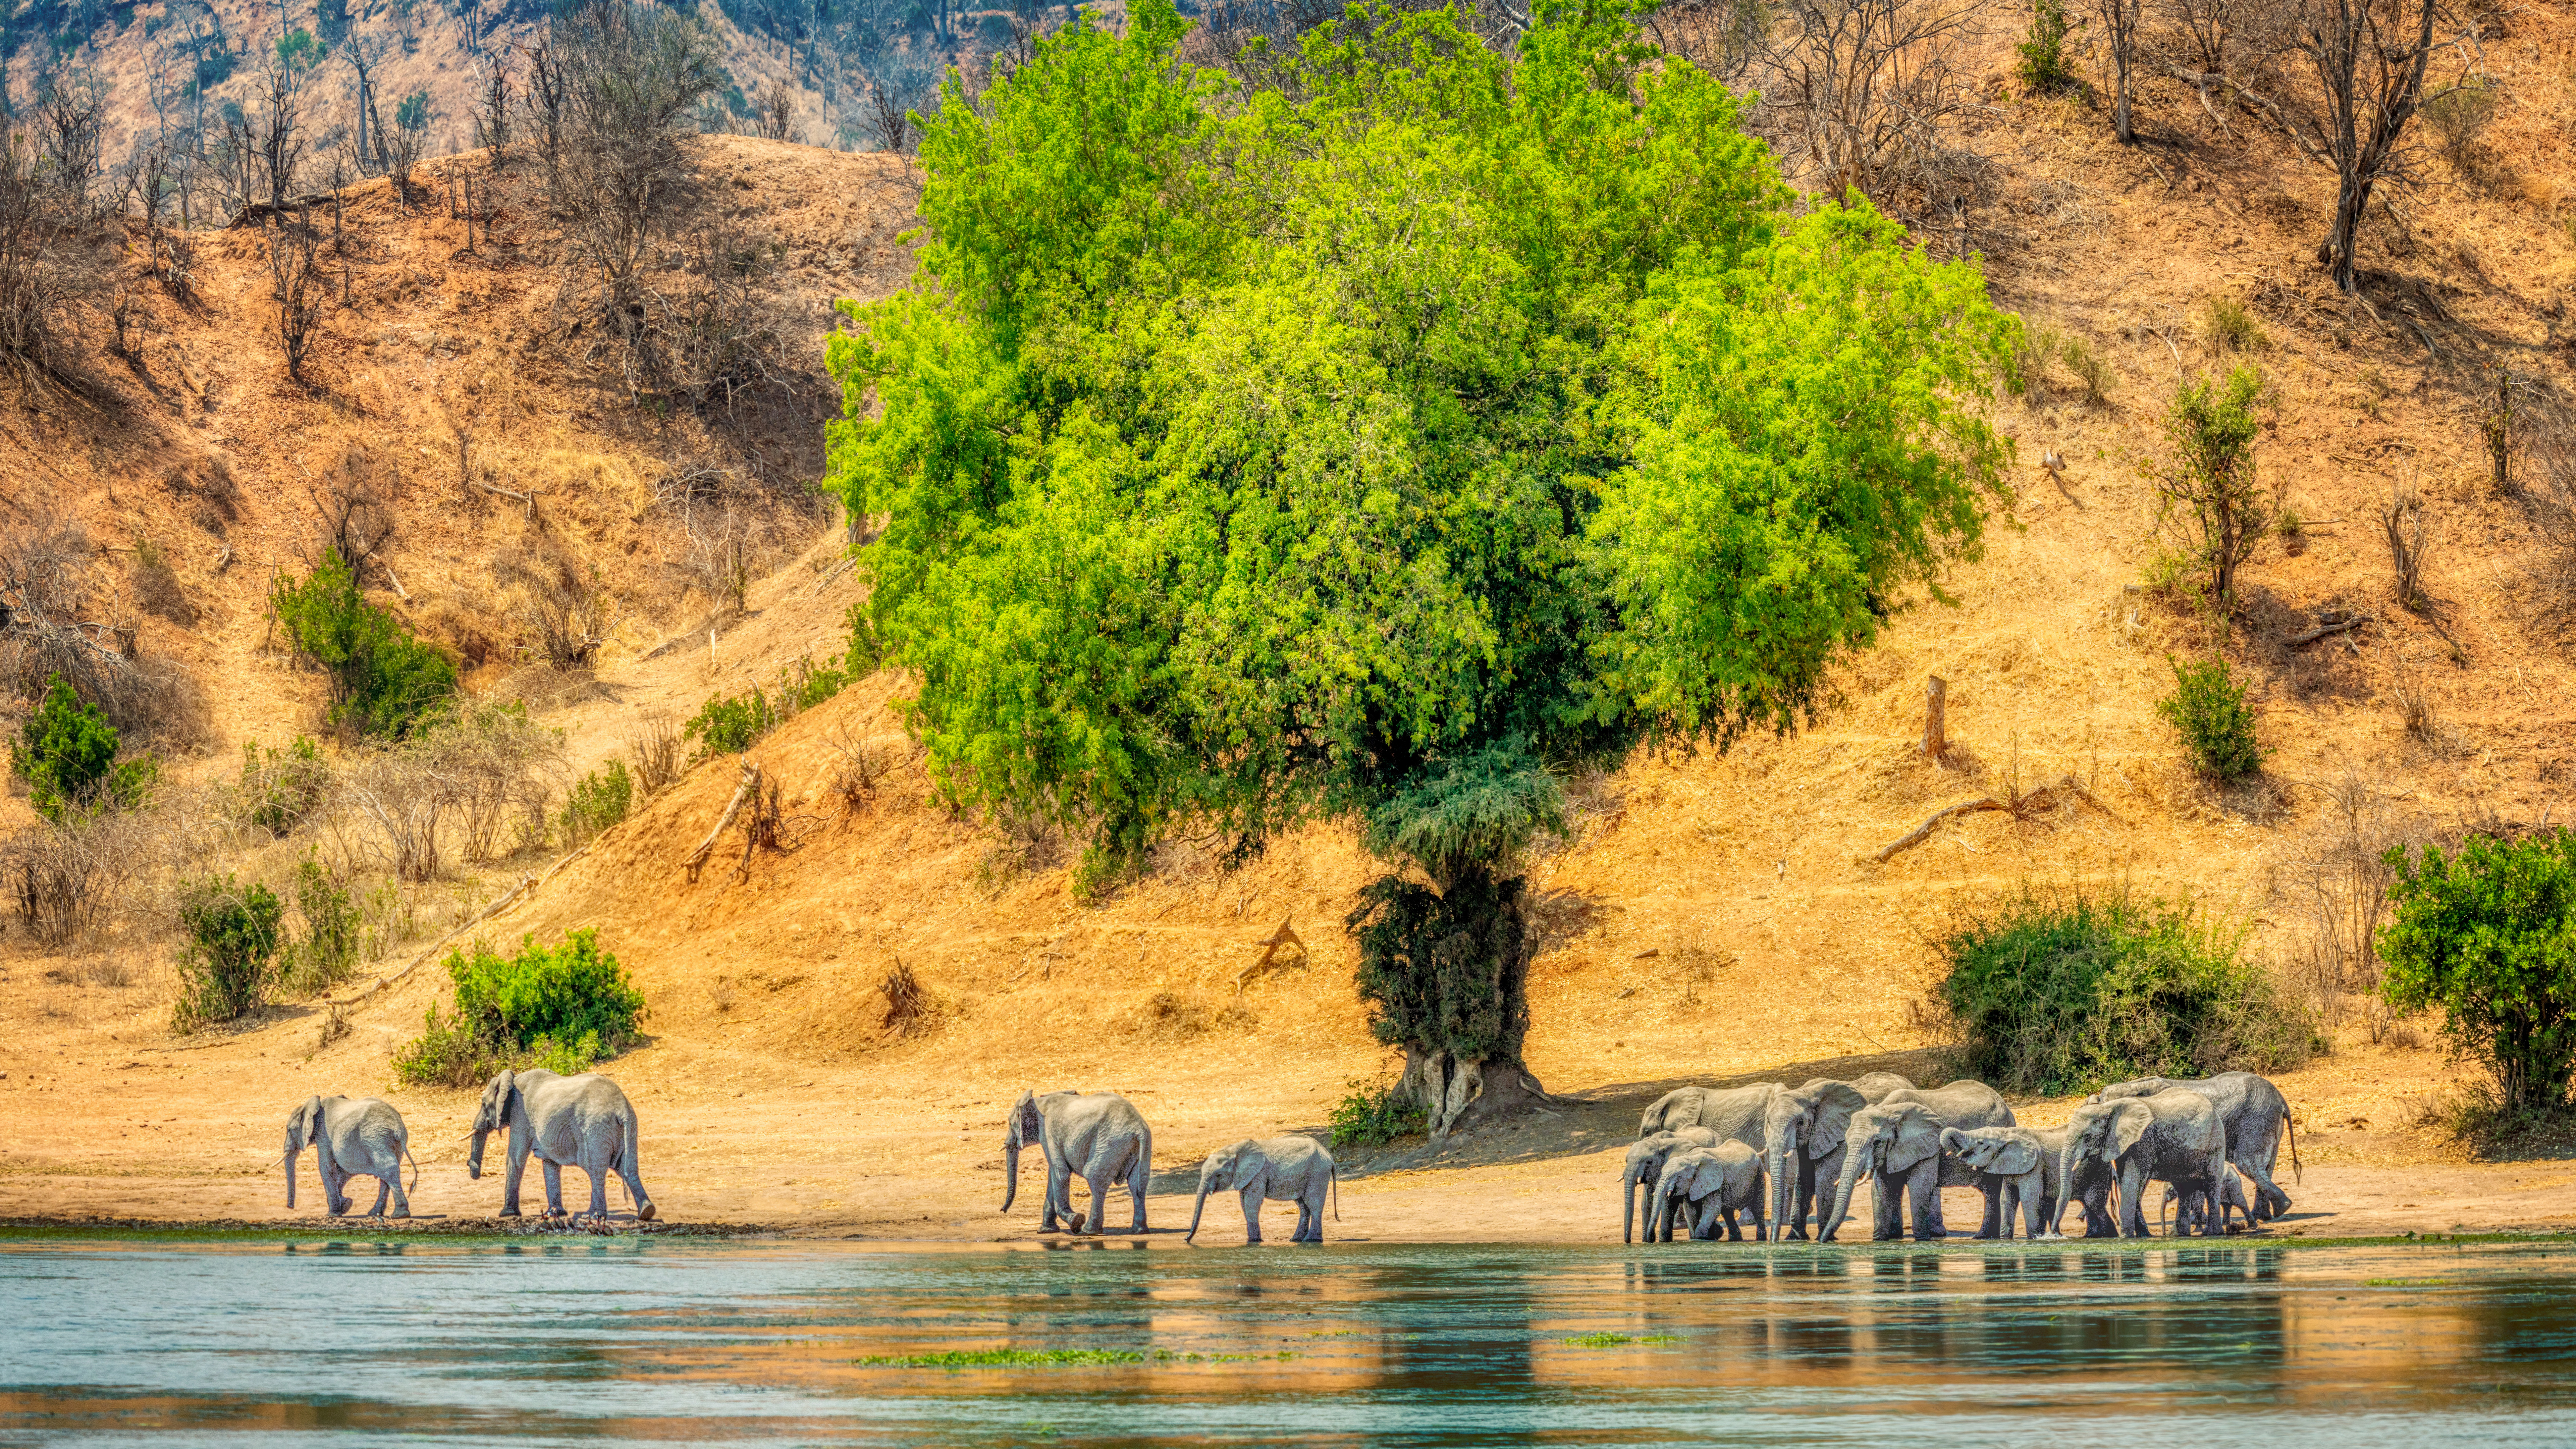 General 7680x4320 Trey Ratcliff elephant animals water trees Africa Zimbabwe Chilo Gorge Lodge